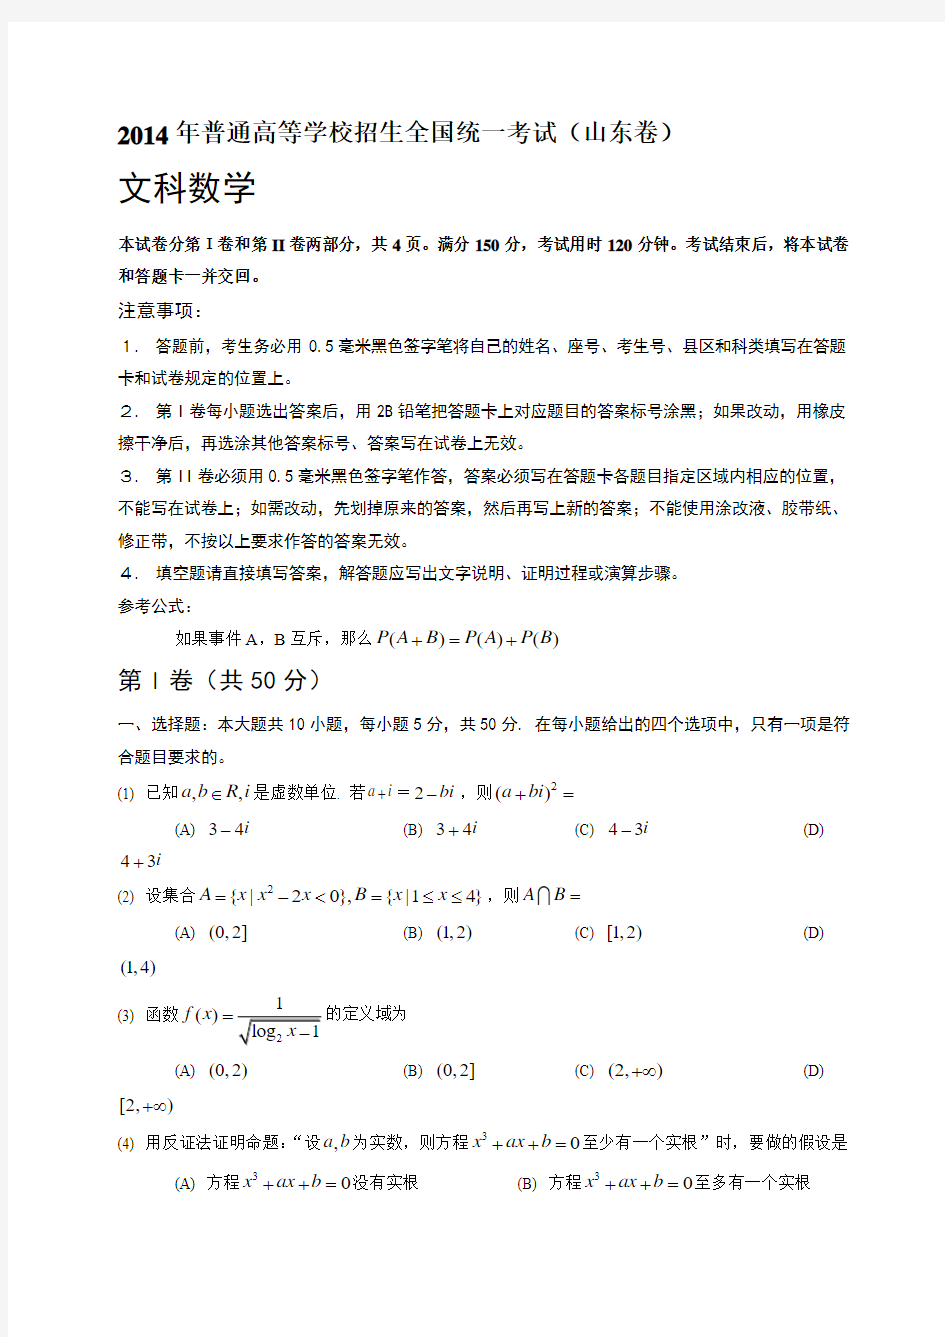 (山东省)2014年高考真题数学(文)试题